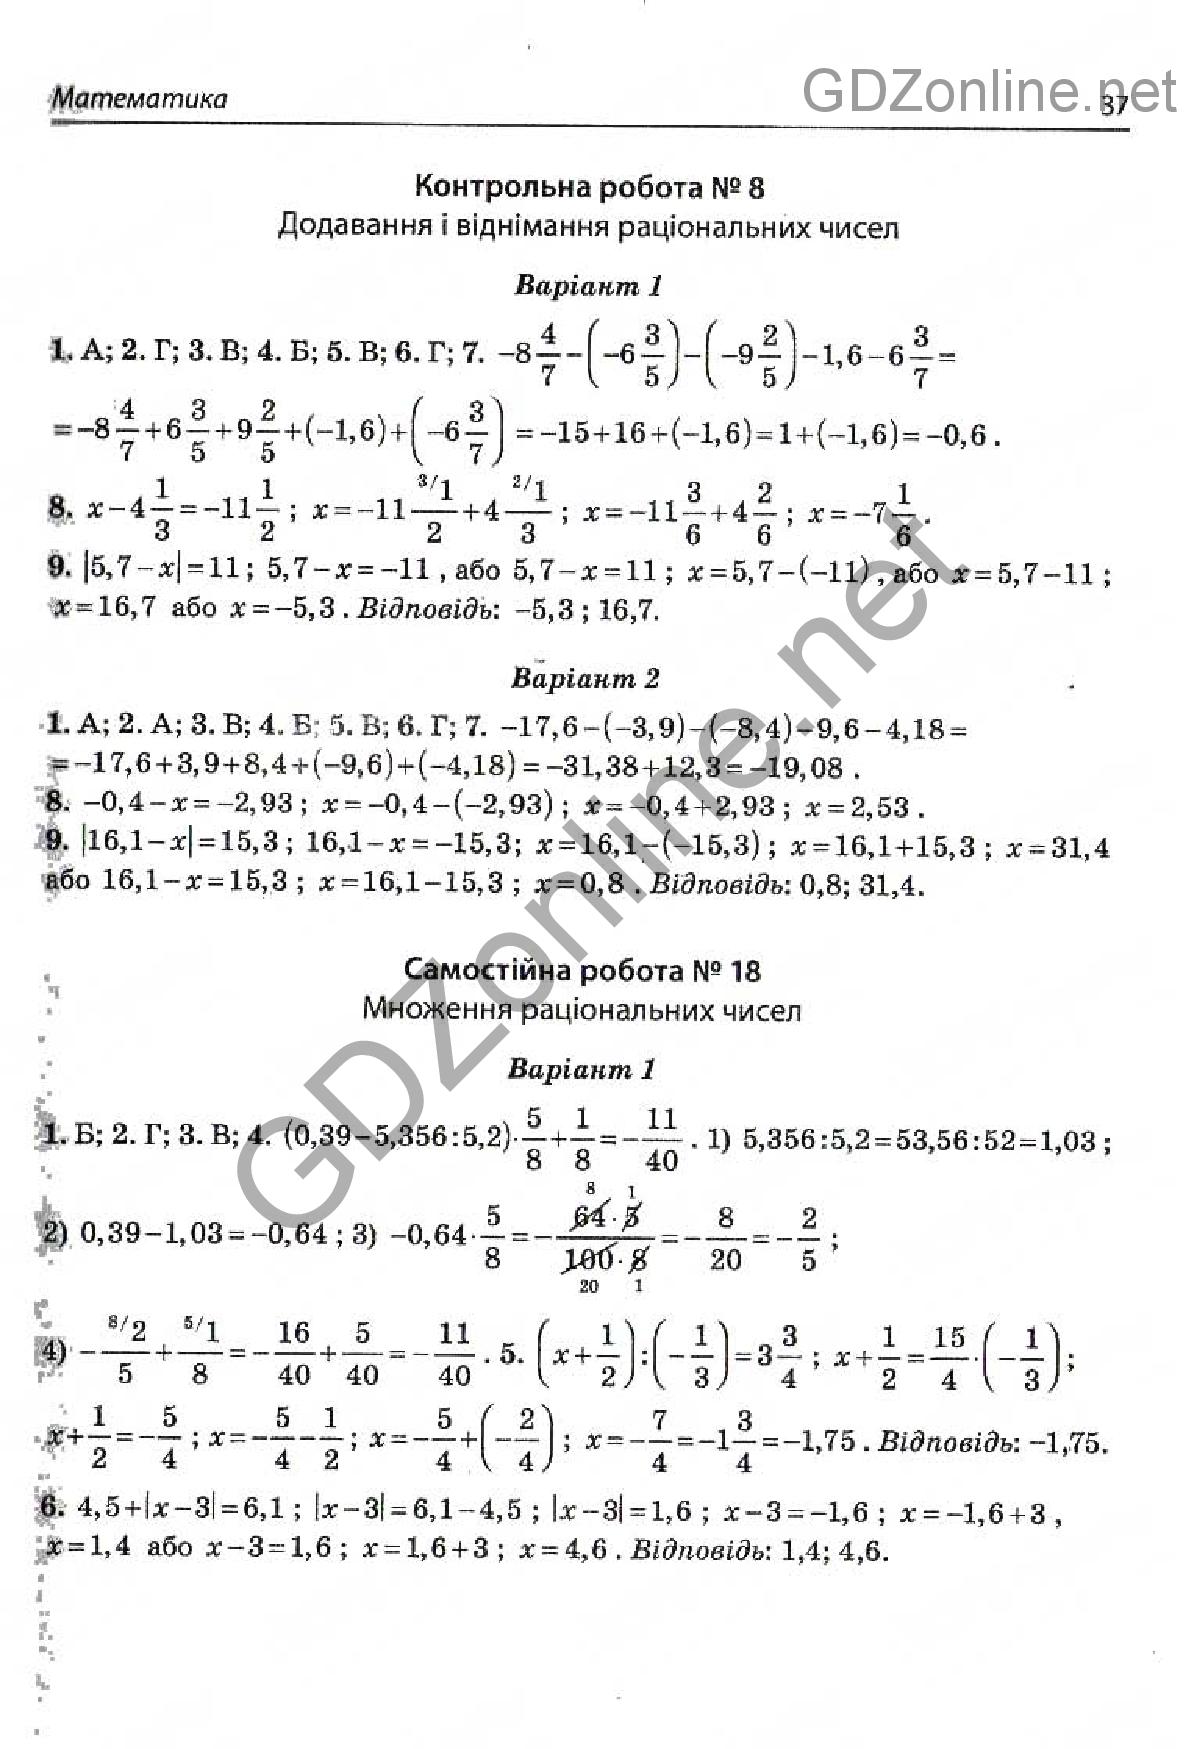 Страница 18 гдз по контрольних и самостийних робит з алгебри и геометрии 9 класса авторов а.и.корнес с.п.бабенко